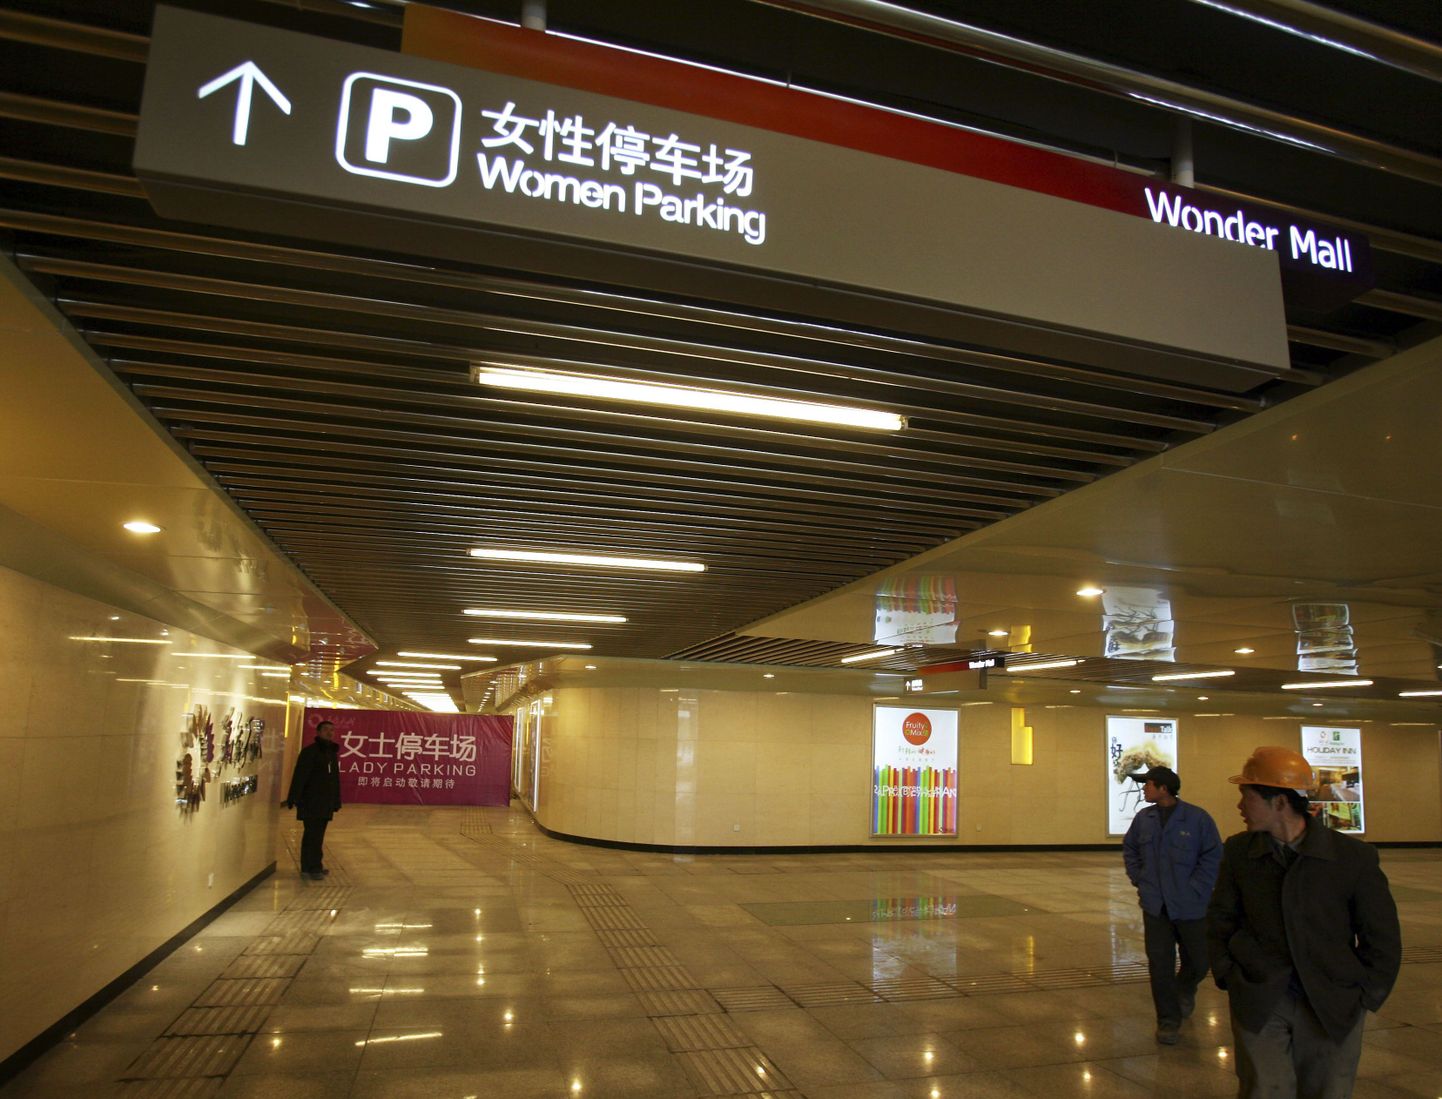 Viit näitab spetsiaalselt naistele mõeldud parkimiskohti Hiinas Hebei provintsi kaubanduskeskuse parklas.